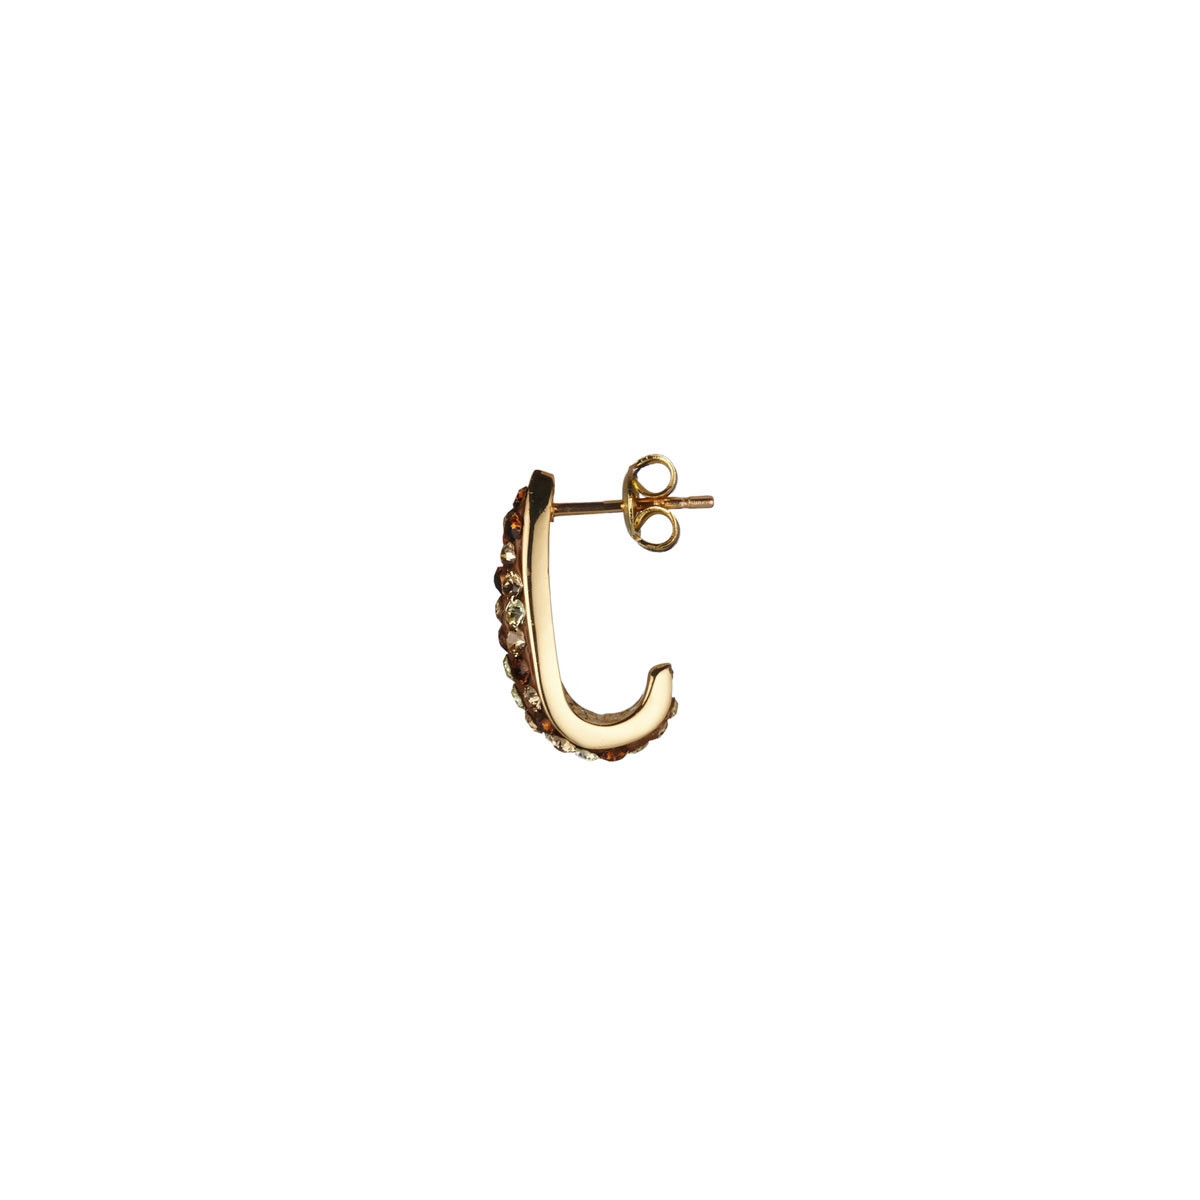 Parure Bracelet + Boucles d'oreilles ornés de Cristaux Swarovski Mordore - Ycnallirb0